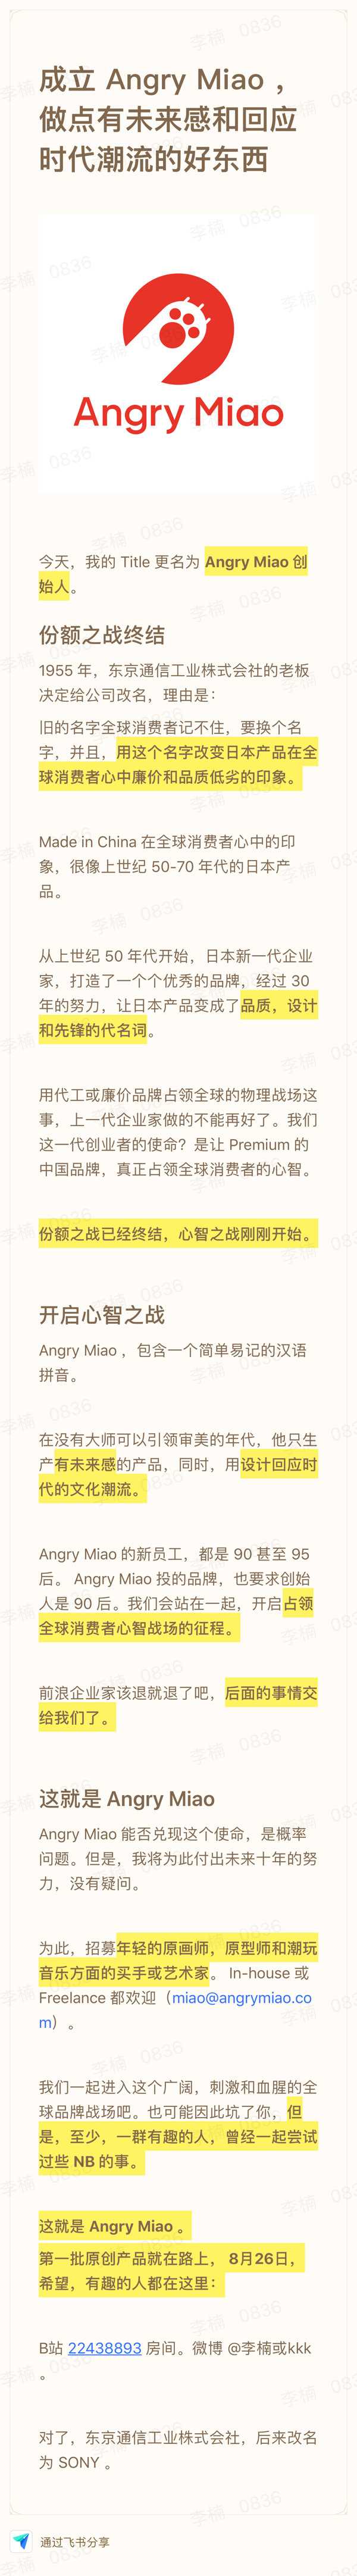 前魅族副总裁李楠宣布成立怒喵科技：心智之战刚刚开始